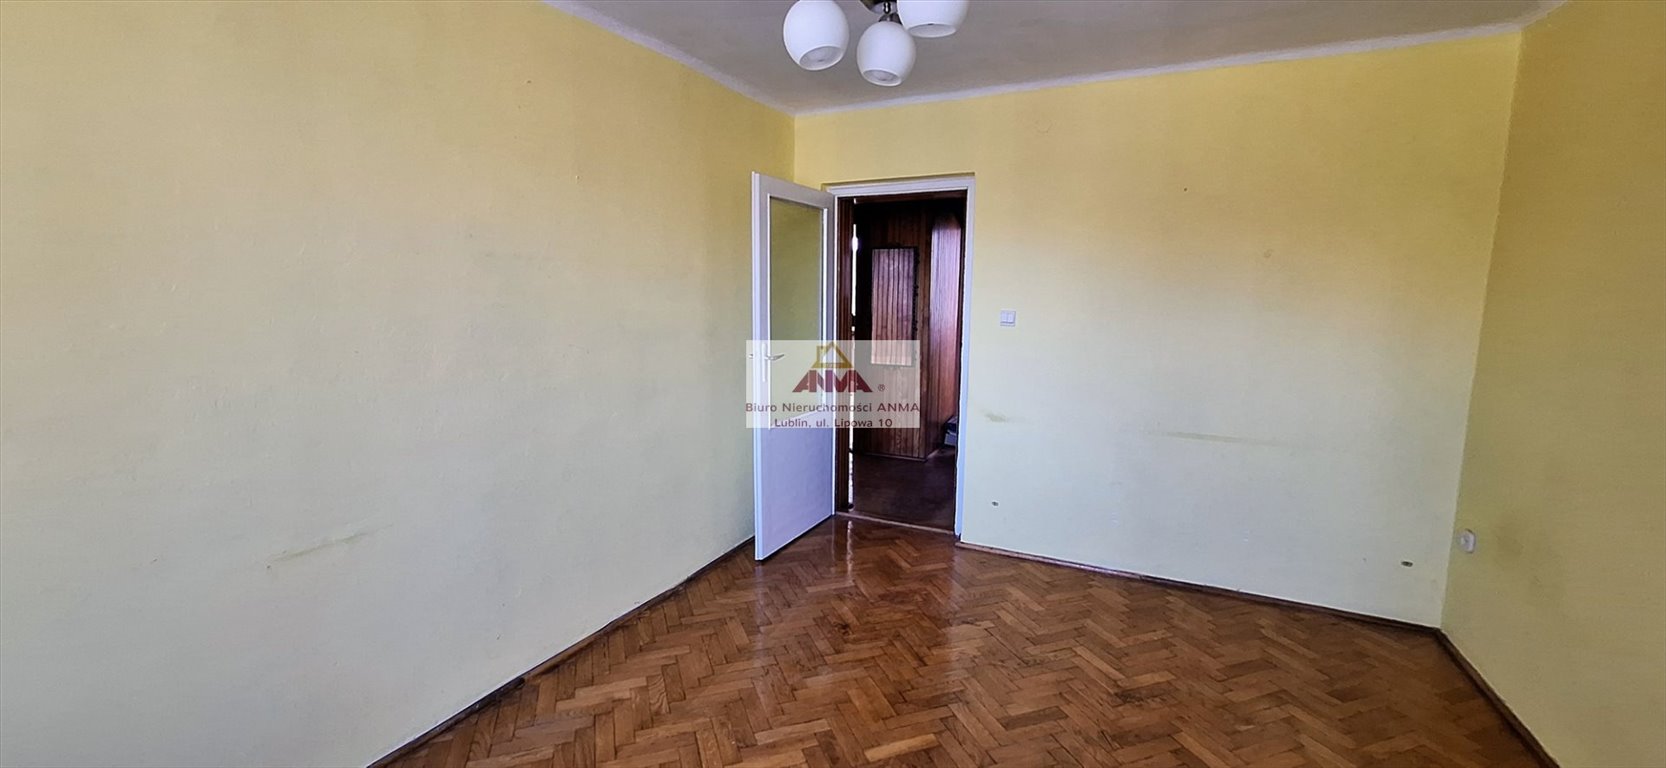 Mieszkanie dwupokojowe na sprzedaż Lublin, LSM, os. Mickiewicza  45m2 Foto 2